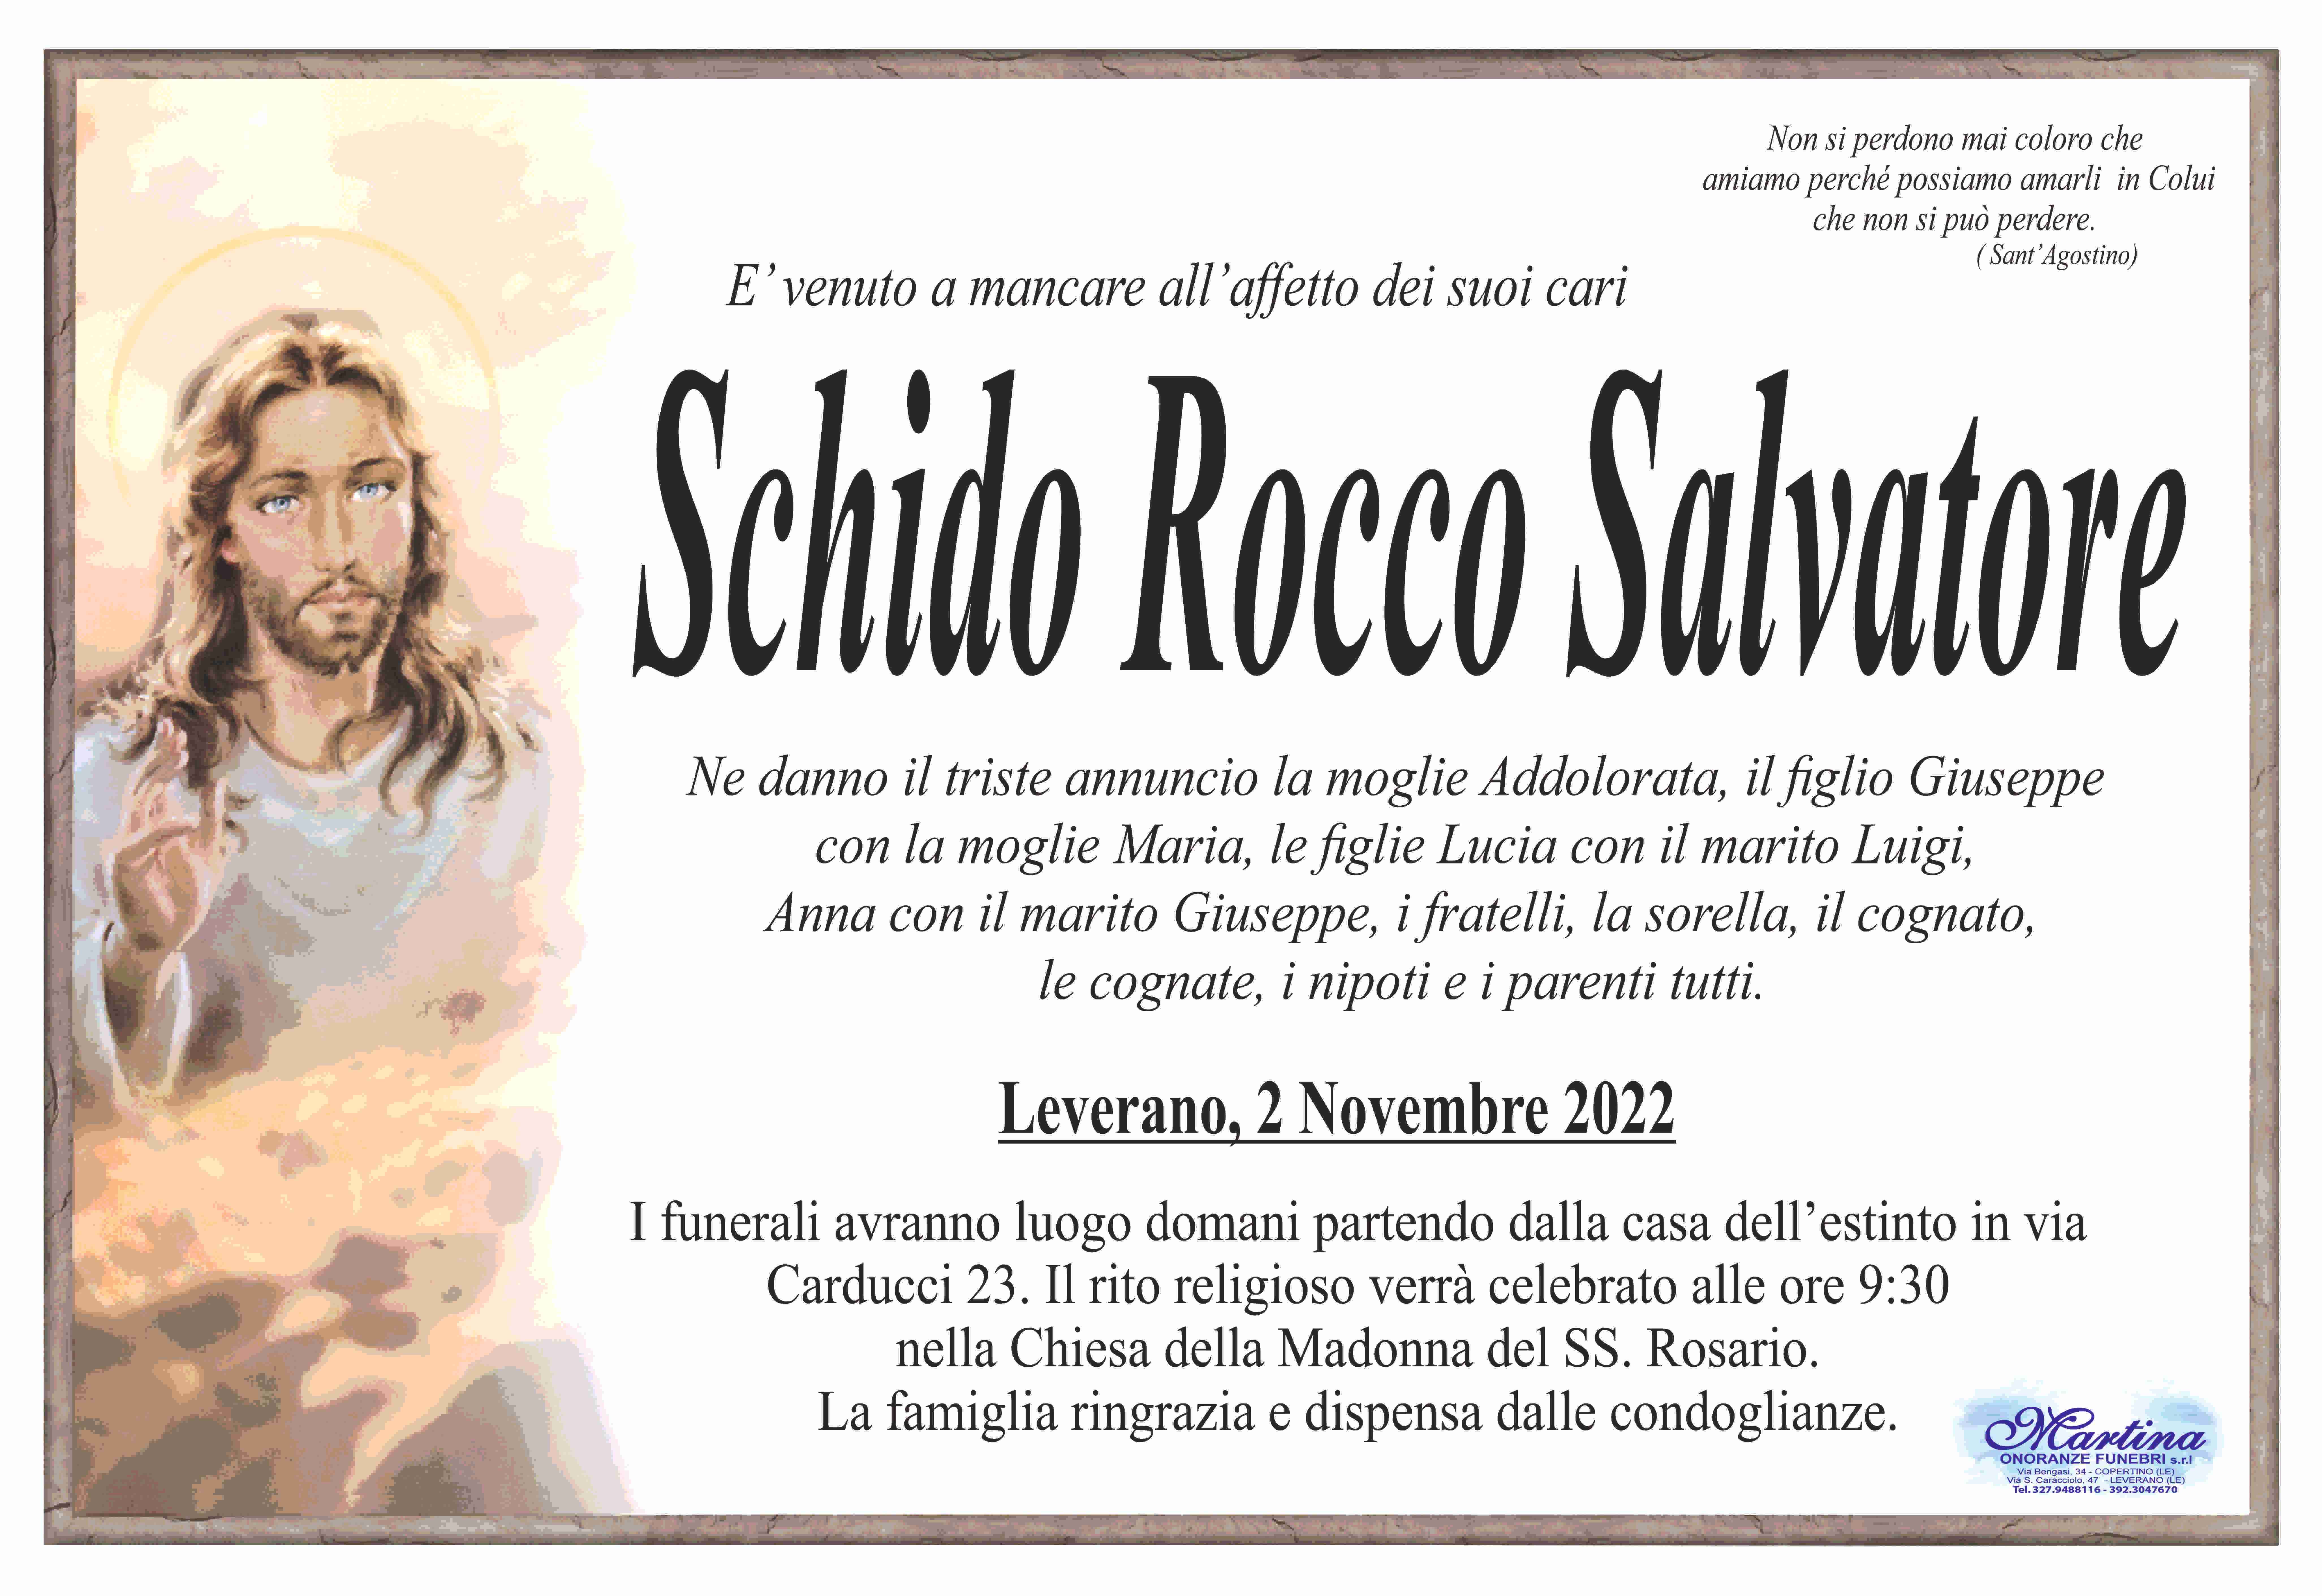 Rocco Salvatore Schido